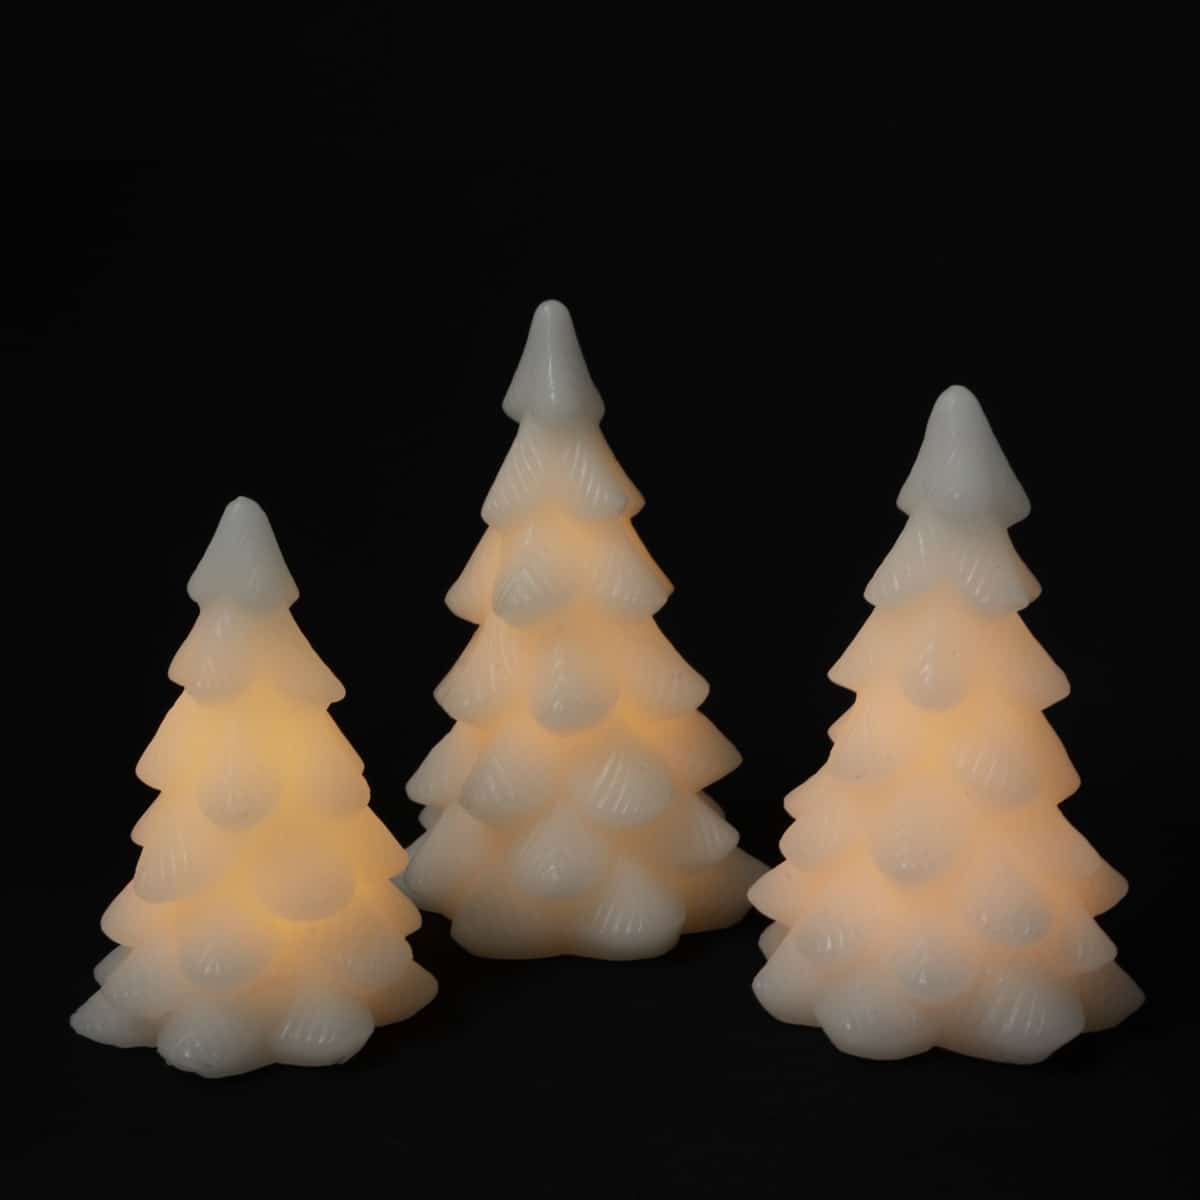 LED lys stearin - Juletræ m/timer - 16,18 eller 20 cm - hvid